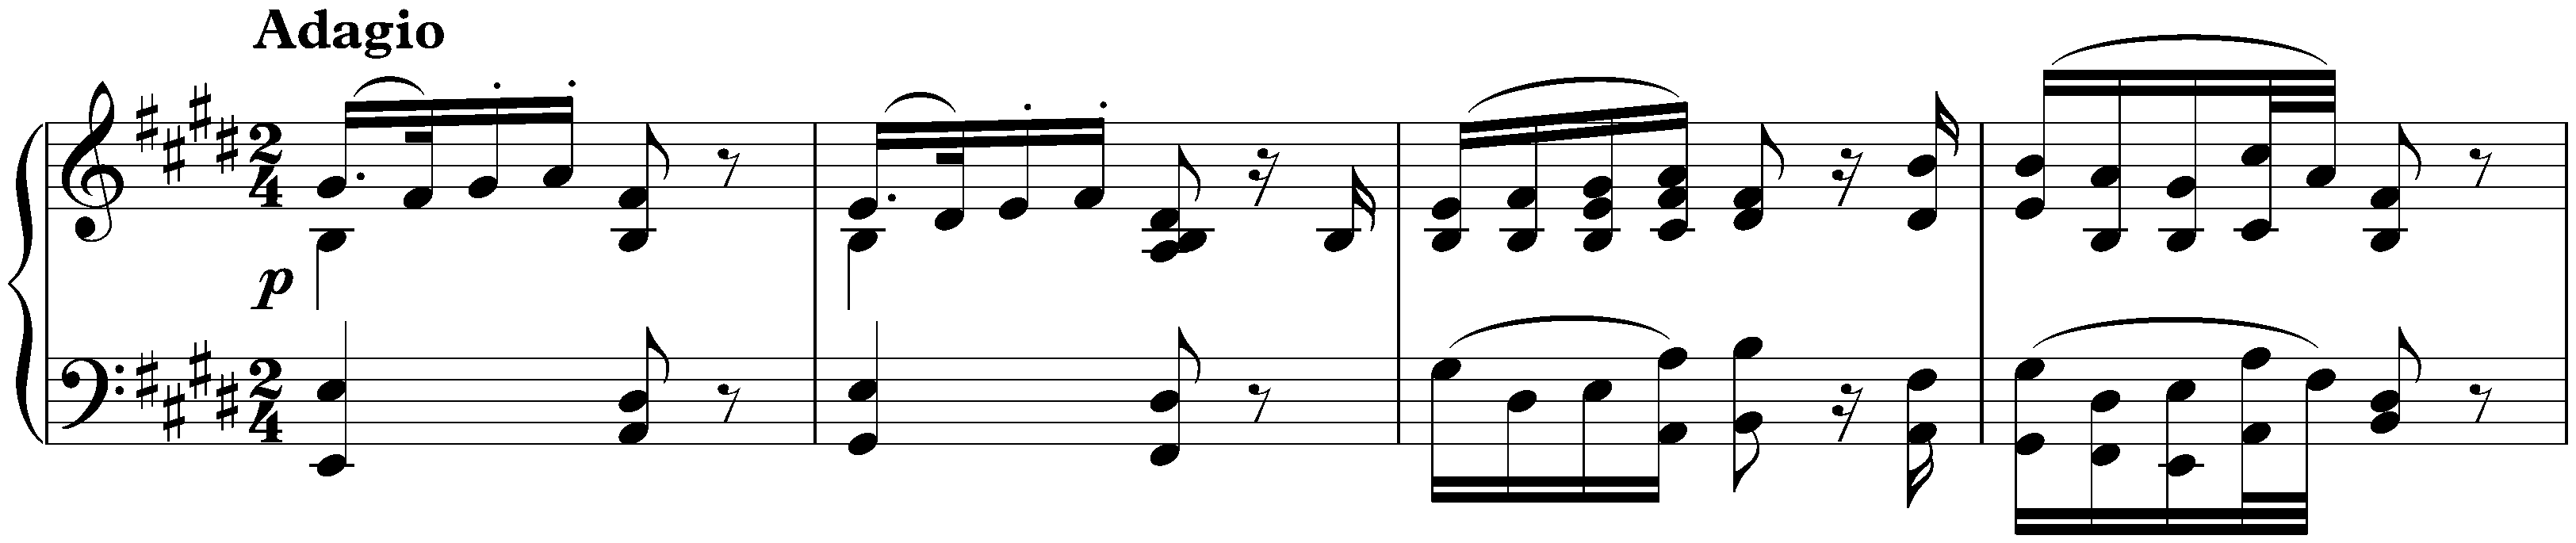 Sonata no. 3 in C major, op. 2 no. 3; 2. Adagio